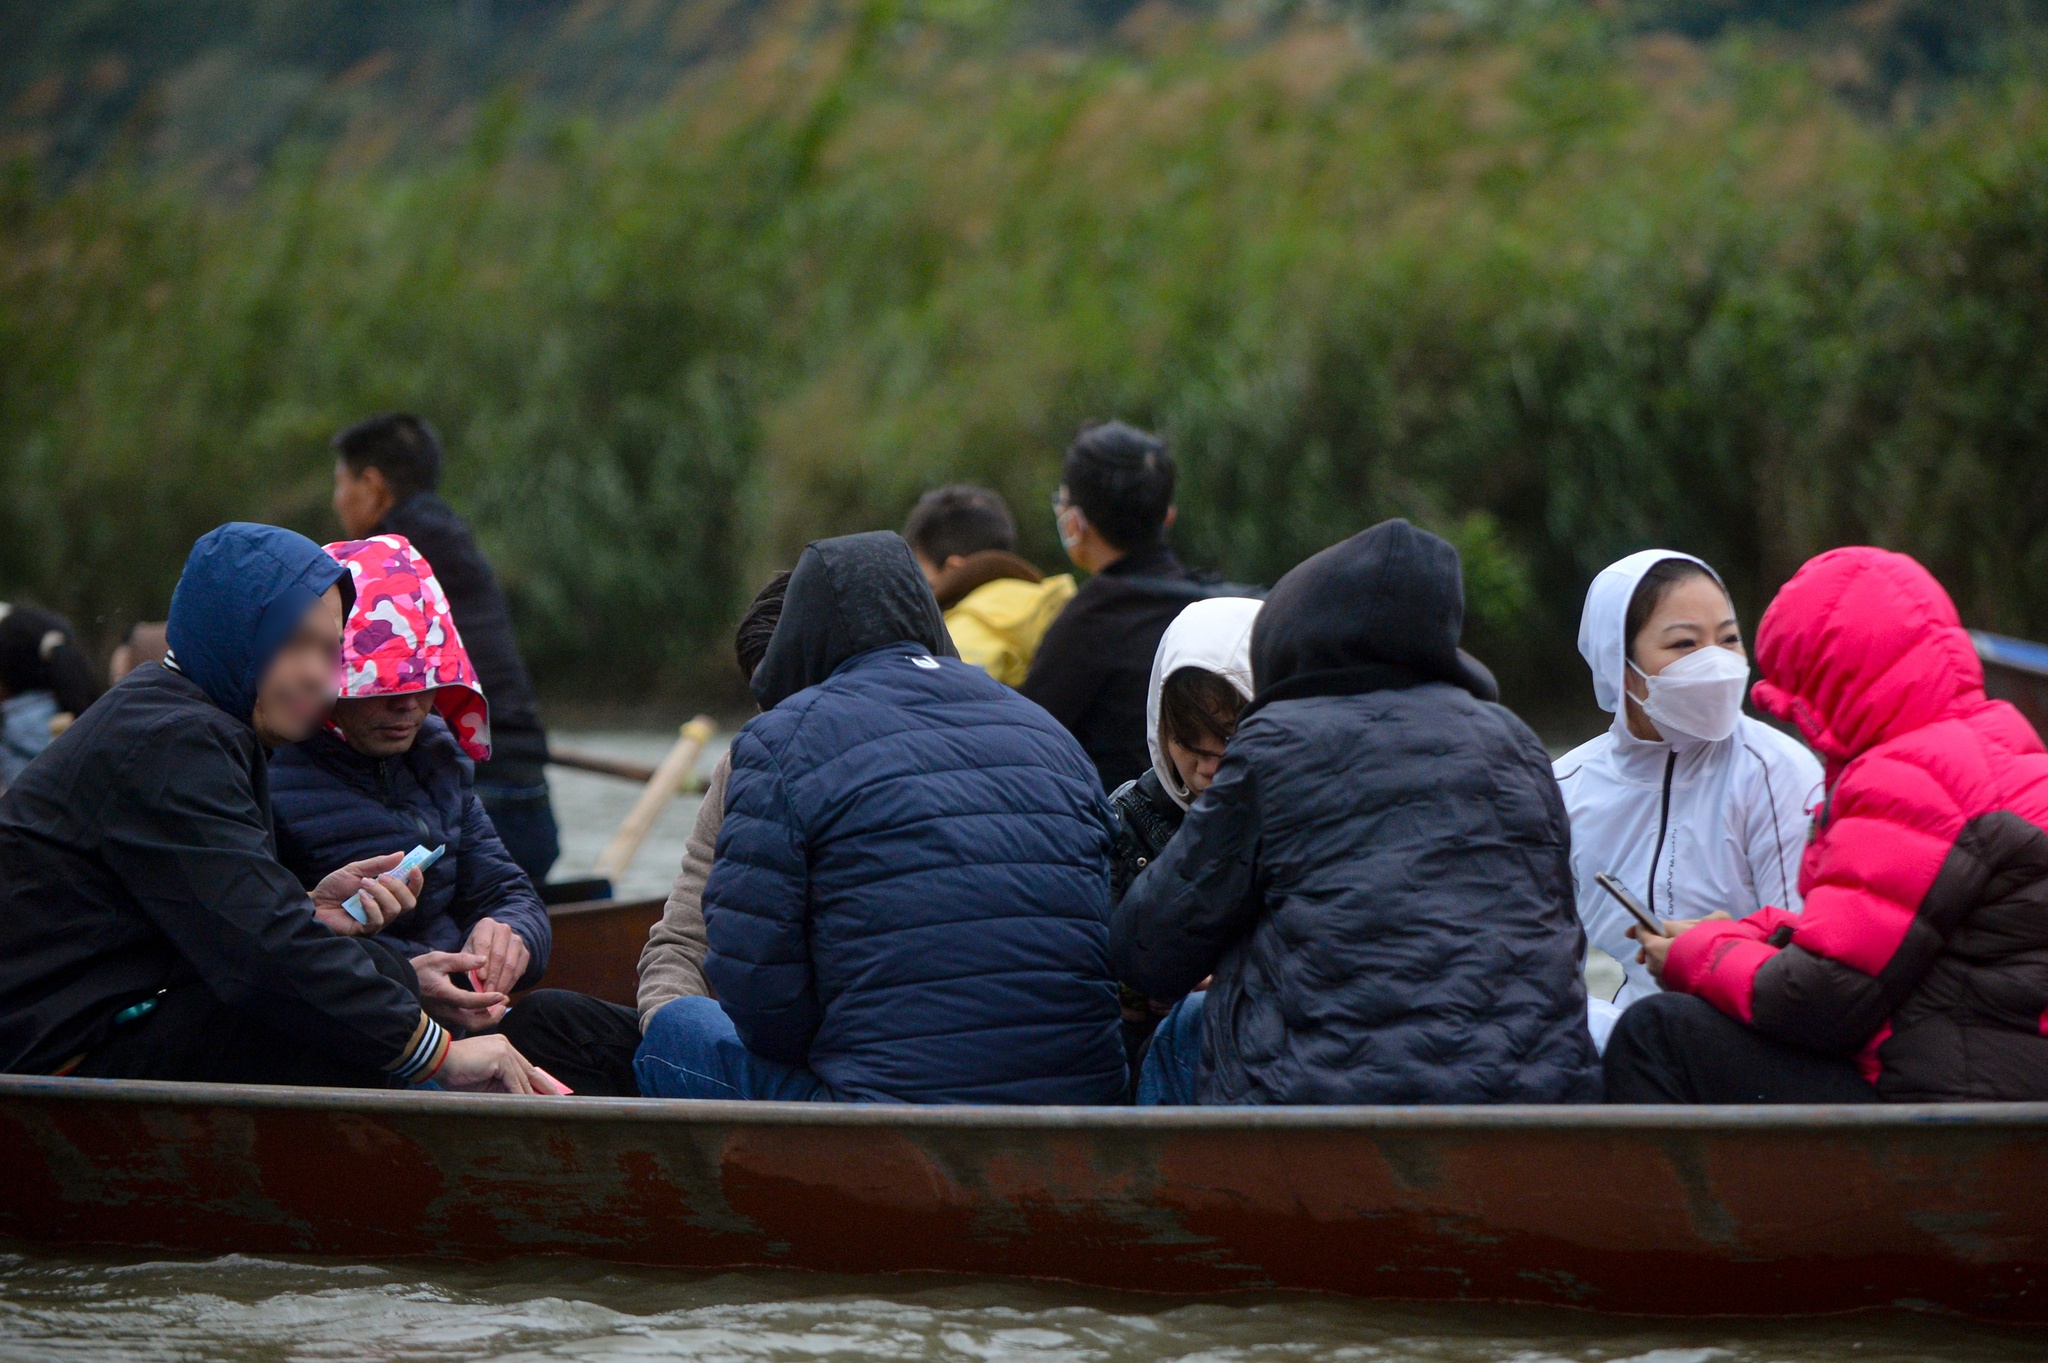 Du khách đánh bạc trên thuyền ở chùa Hương, ban quản lý 'than' khó - ảnh 4